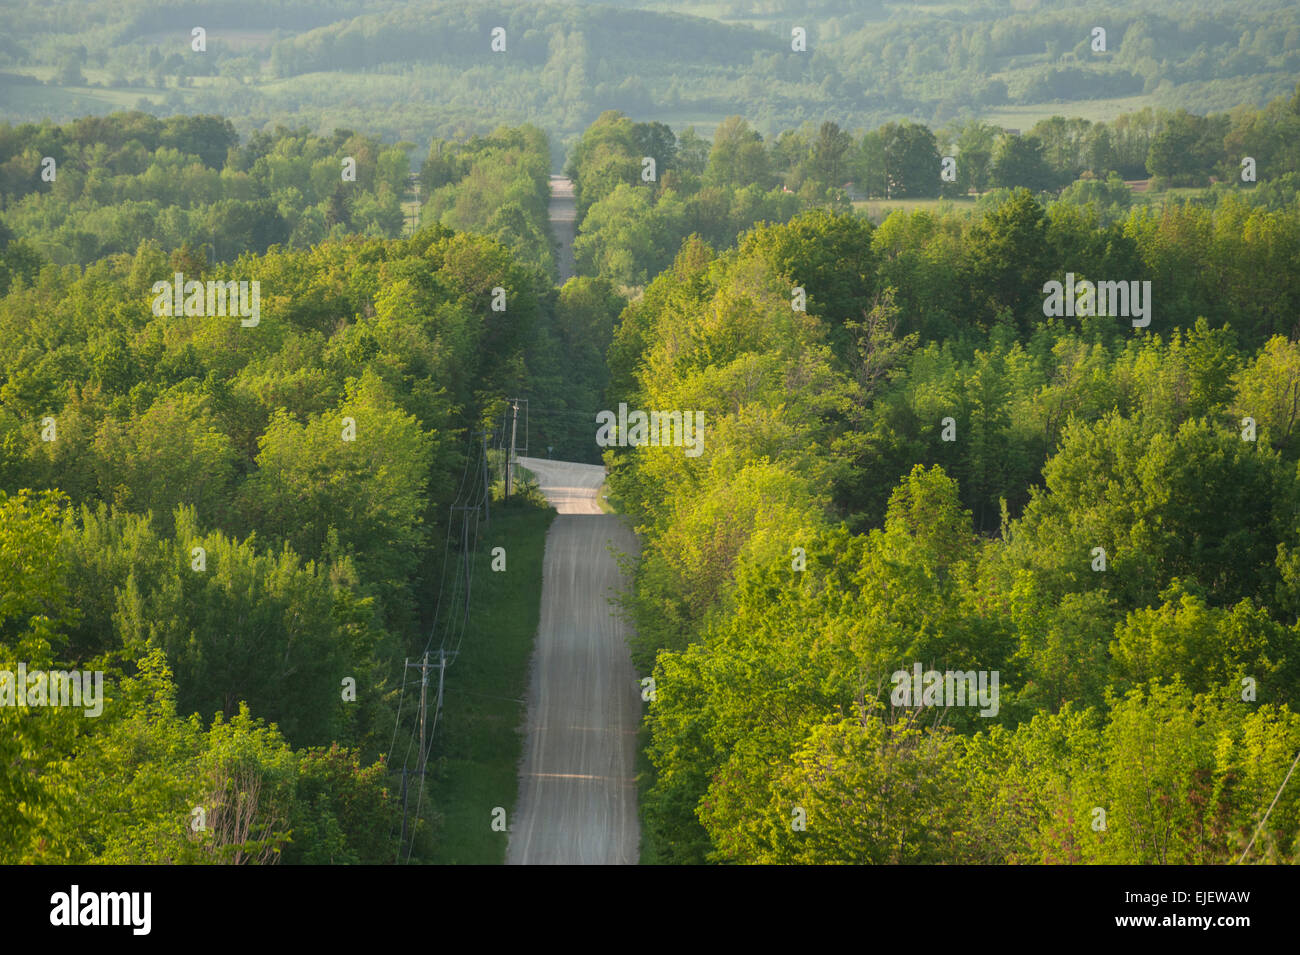 Une route de gravier en été conduit sur les collines boisées dans les régions rurales du sud de l'Ontario, Canada. Banque D'Images